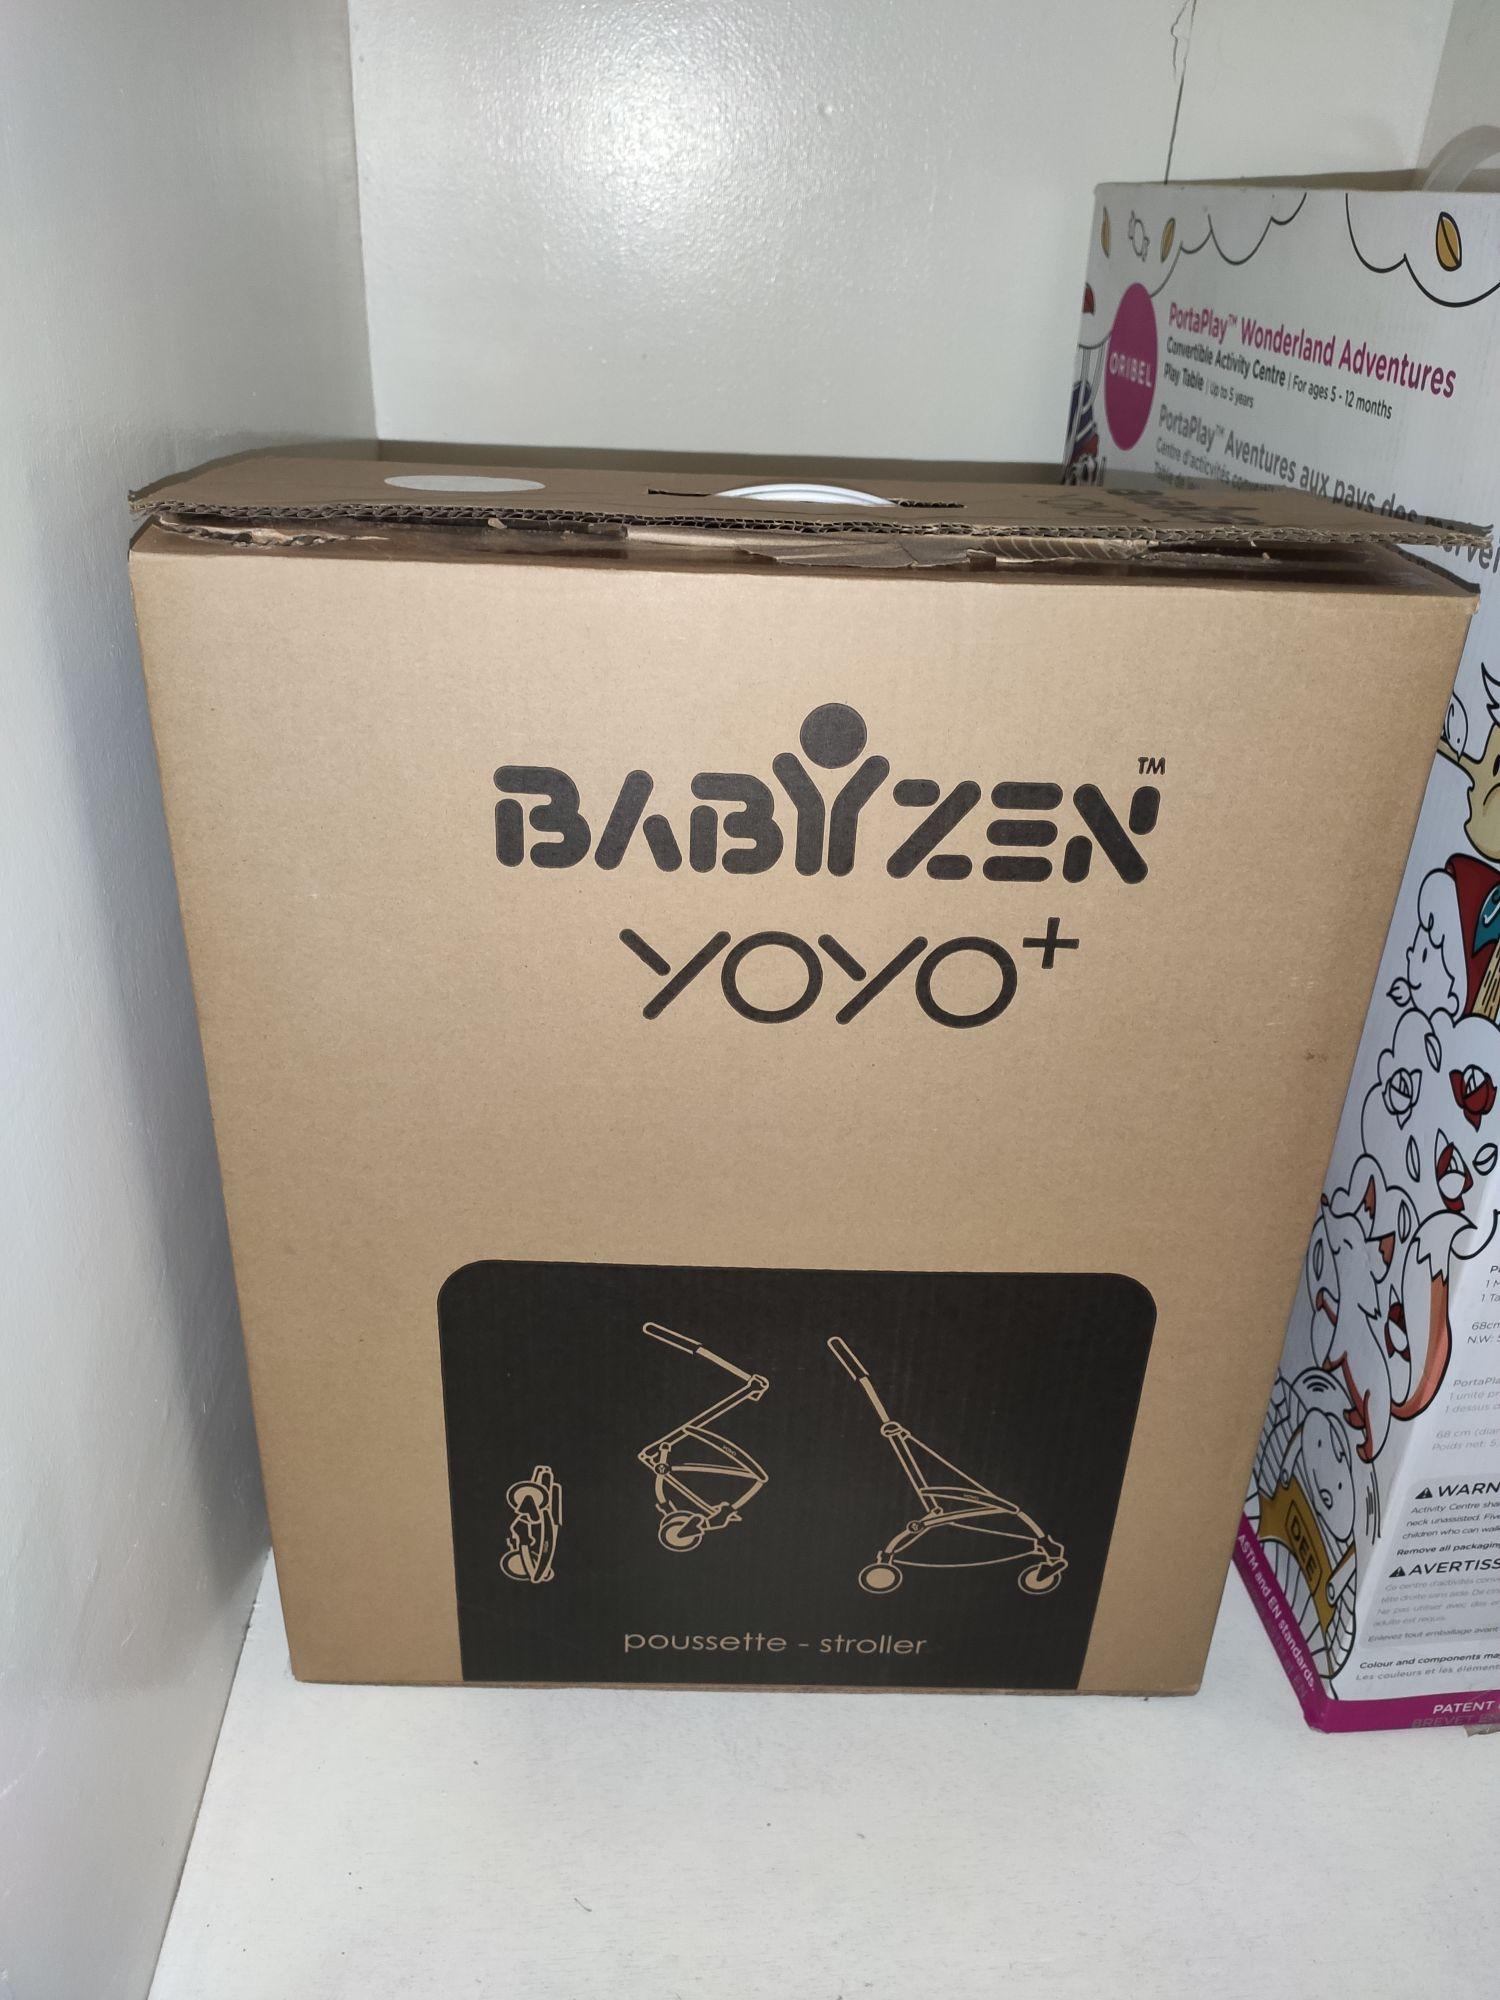 babyzen yoyo plus price